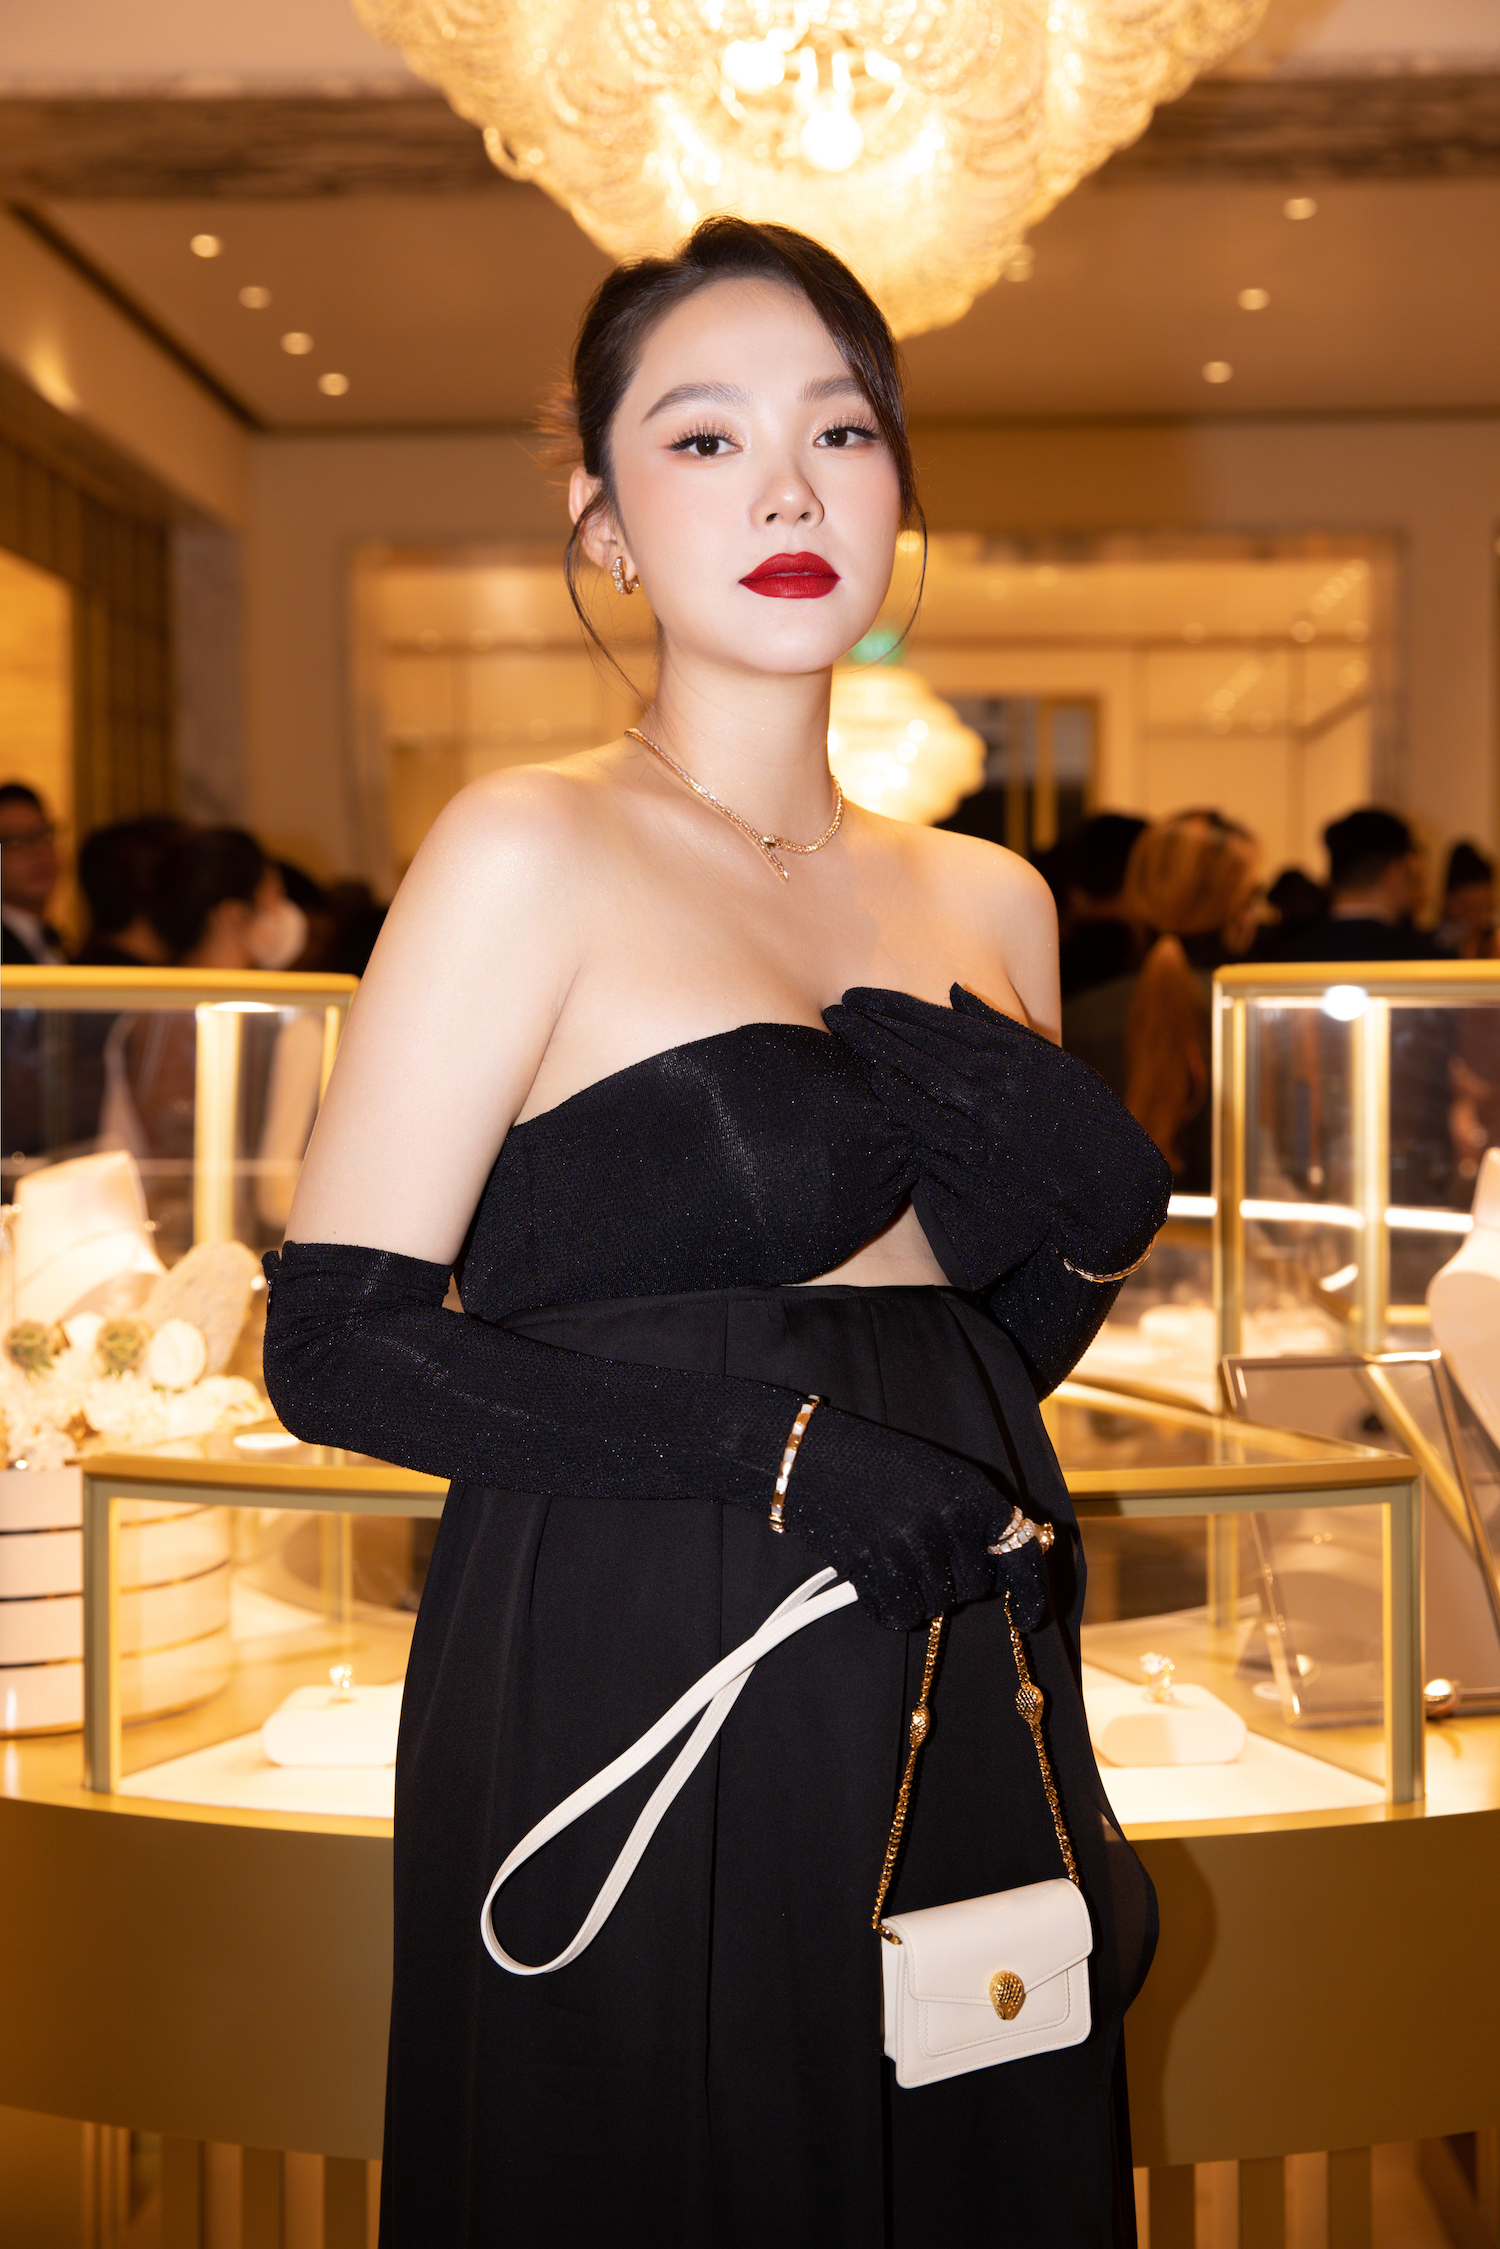 Hoa hậu Thùy Tiên mặc gợi cảm đi sự kiện sau ồn ào kiện tụng - Ảnh 8.